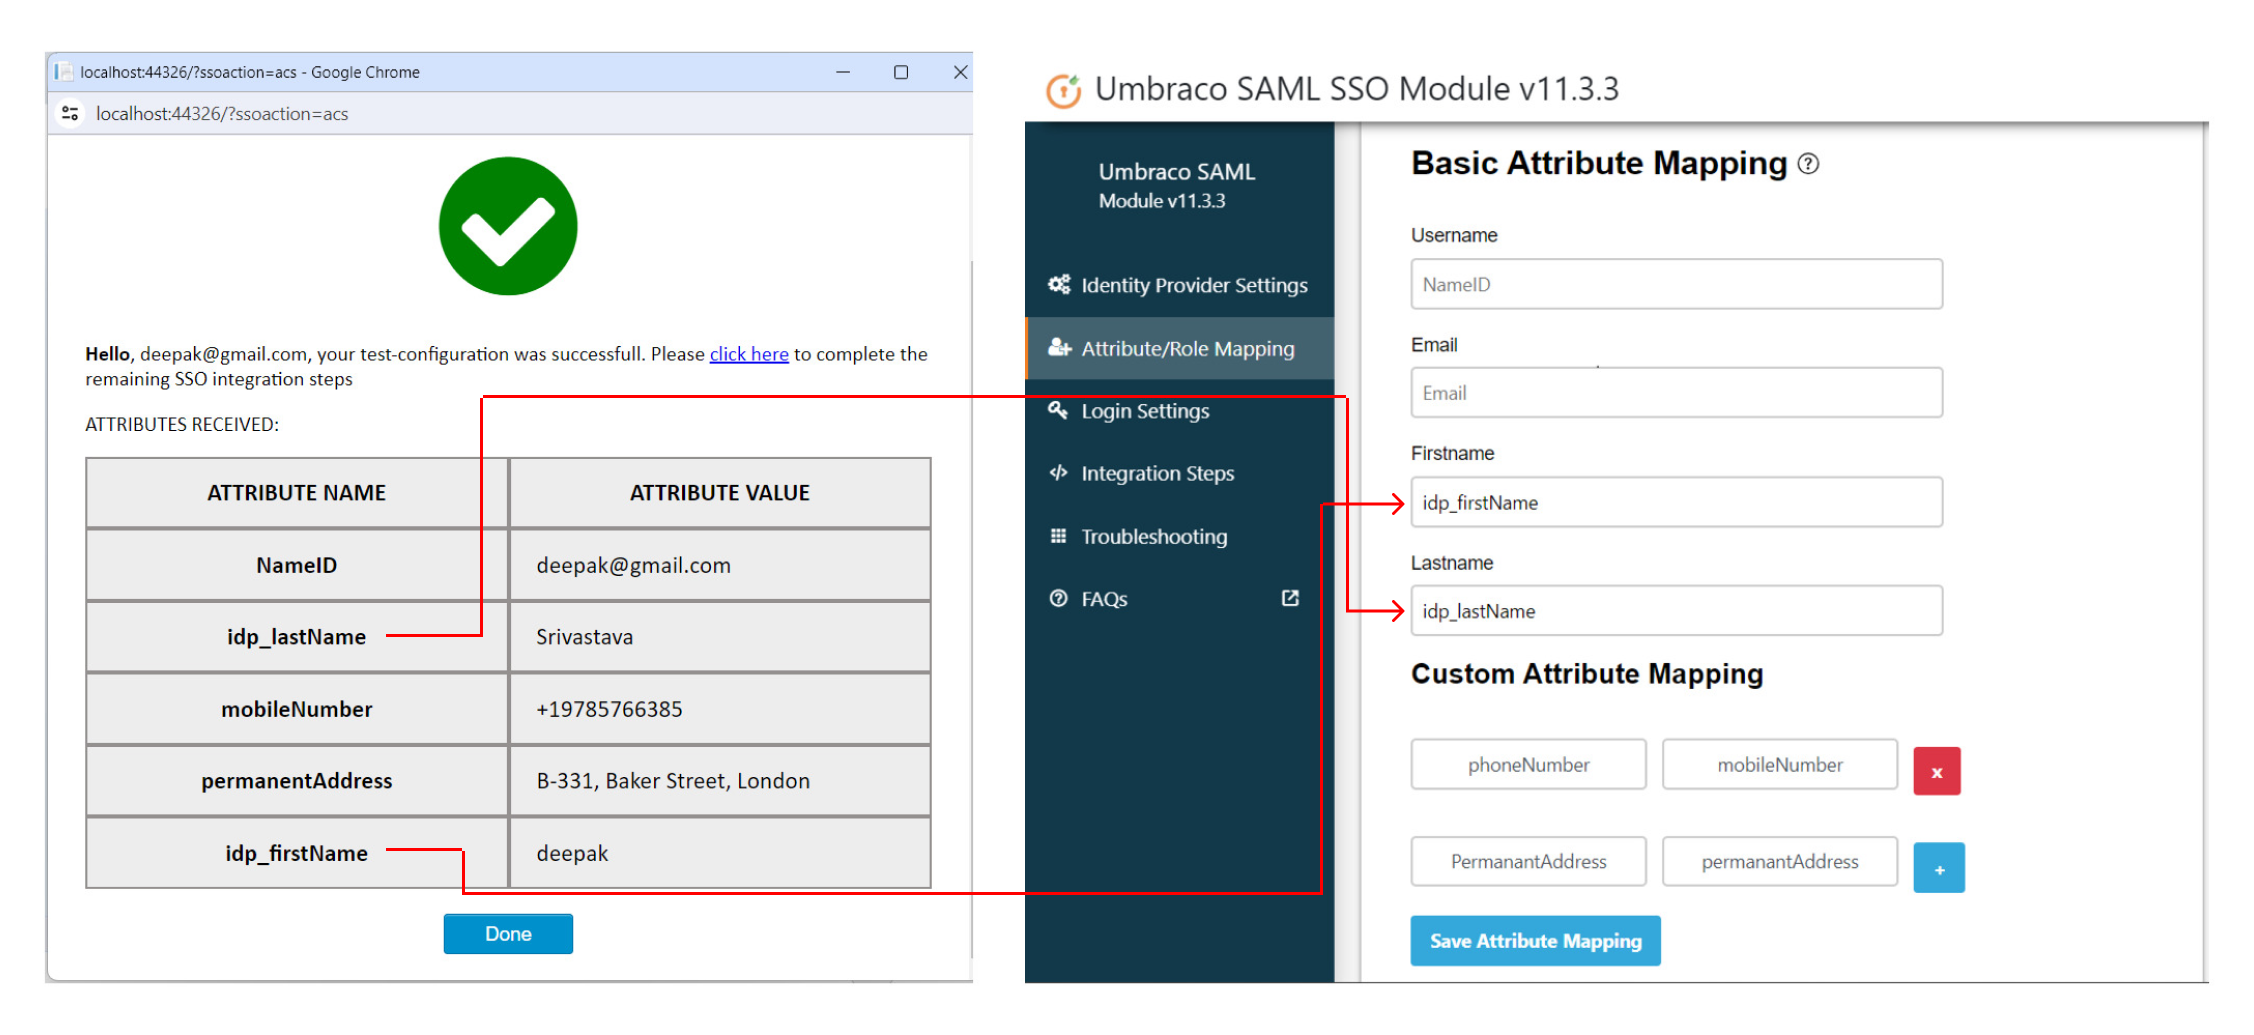 Umbraco SAML Single Sign-On (SSO) - Umbraco SAML SSO - SAML for Umbraco - Image of Attribute Mapping section